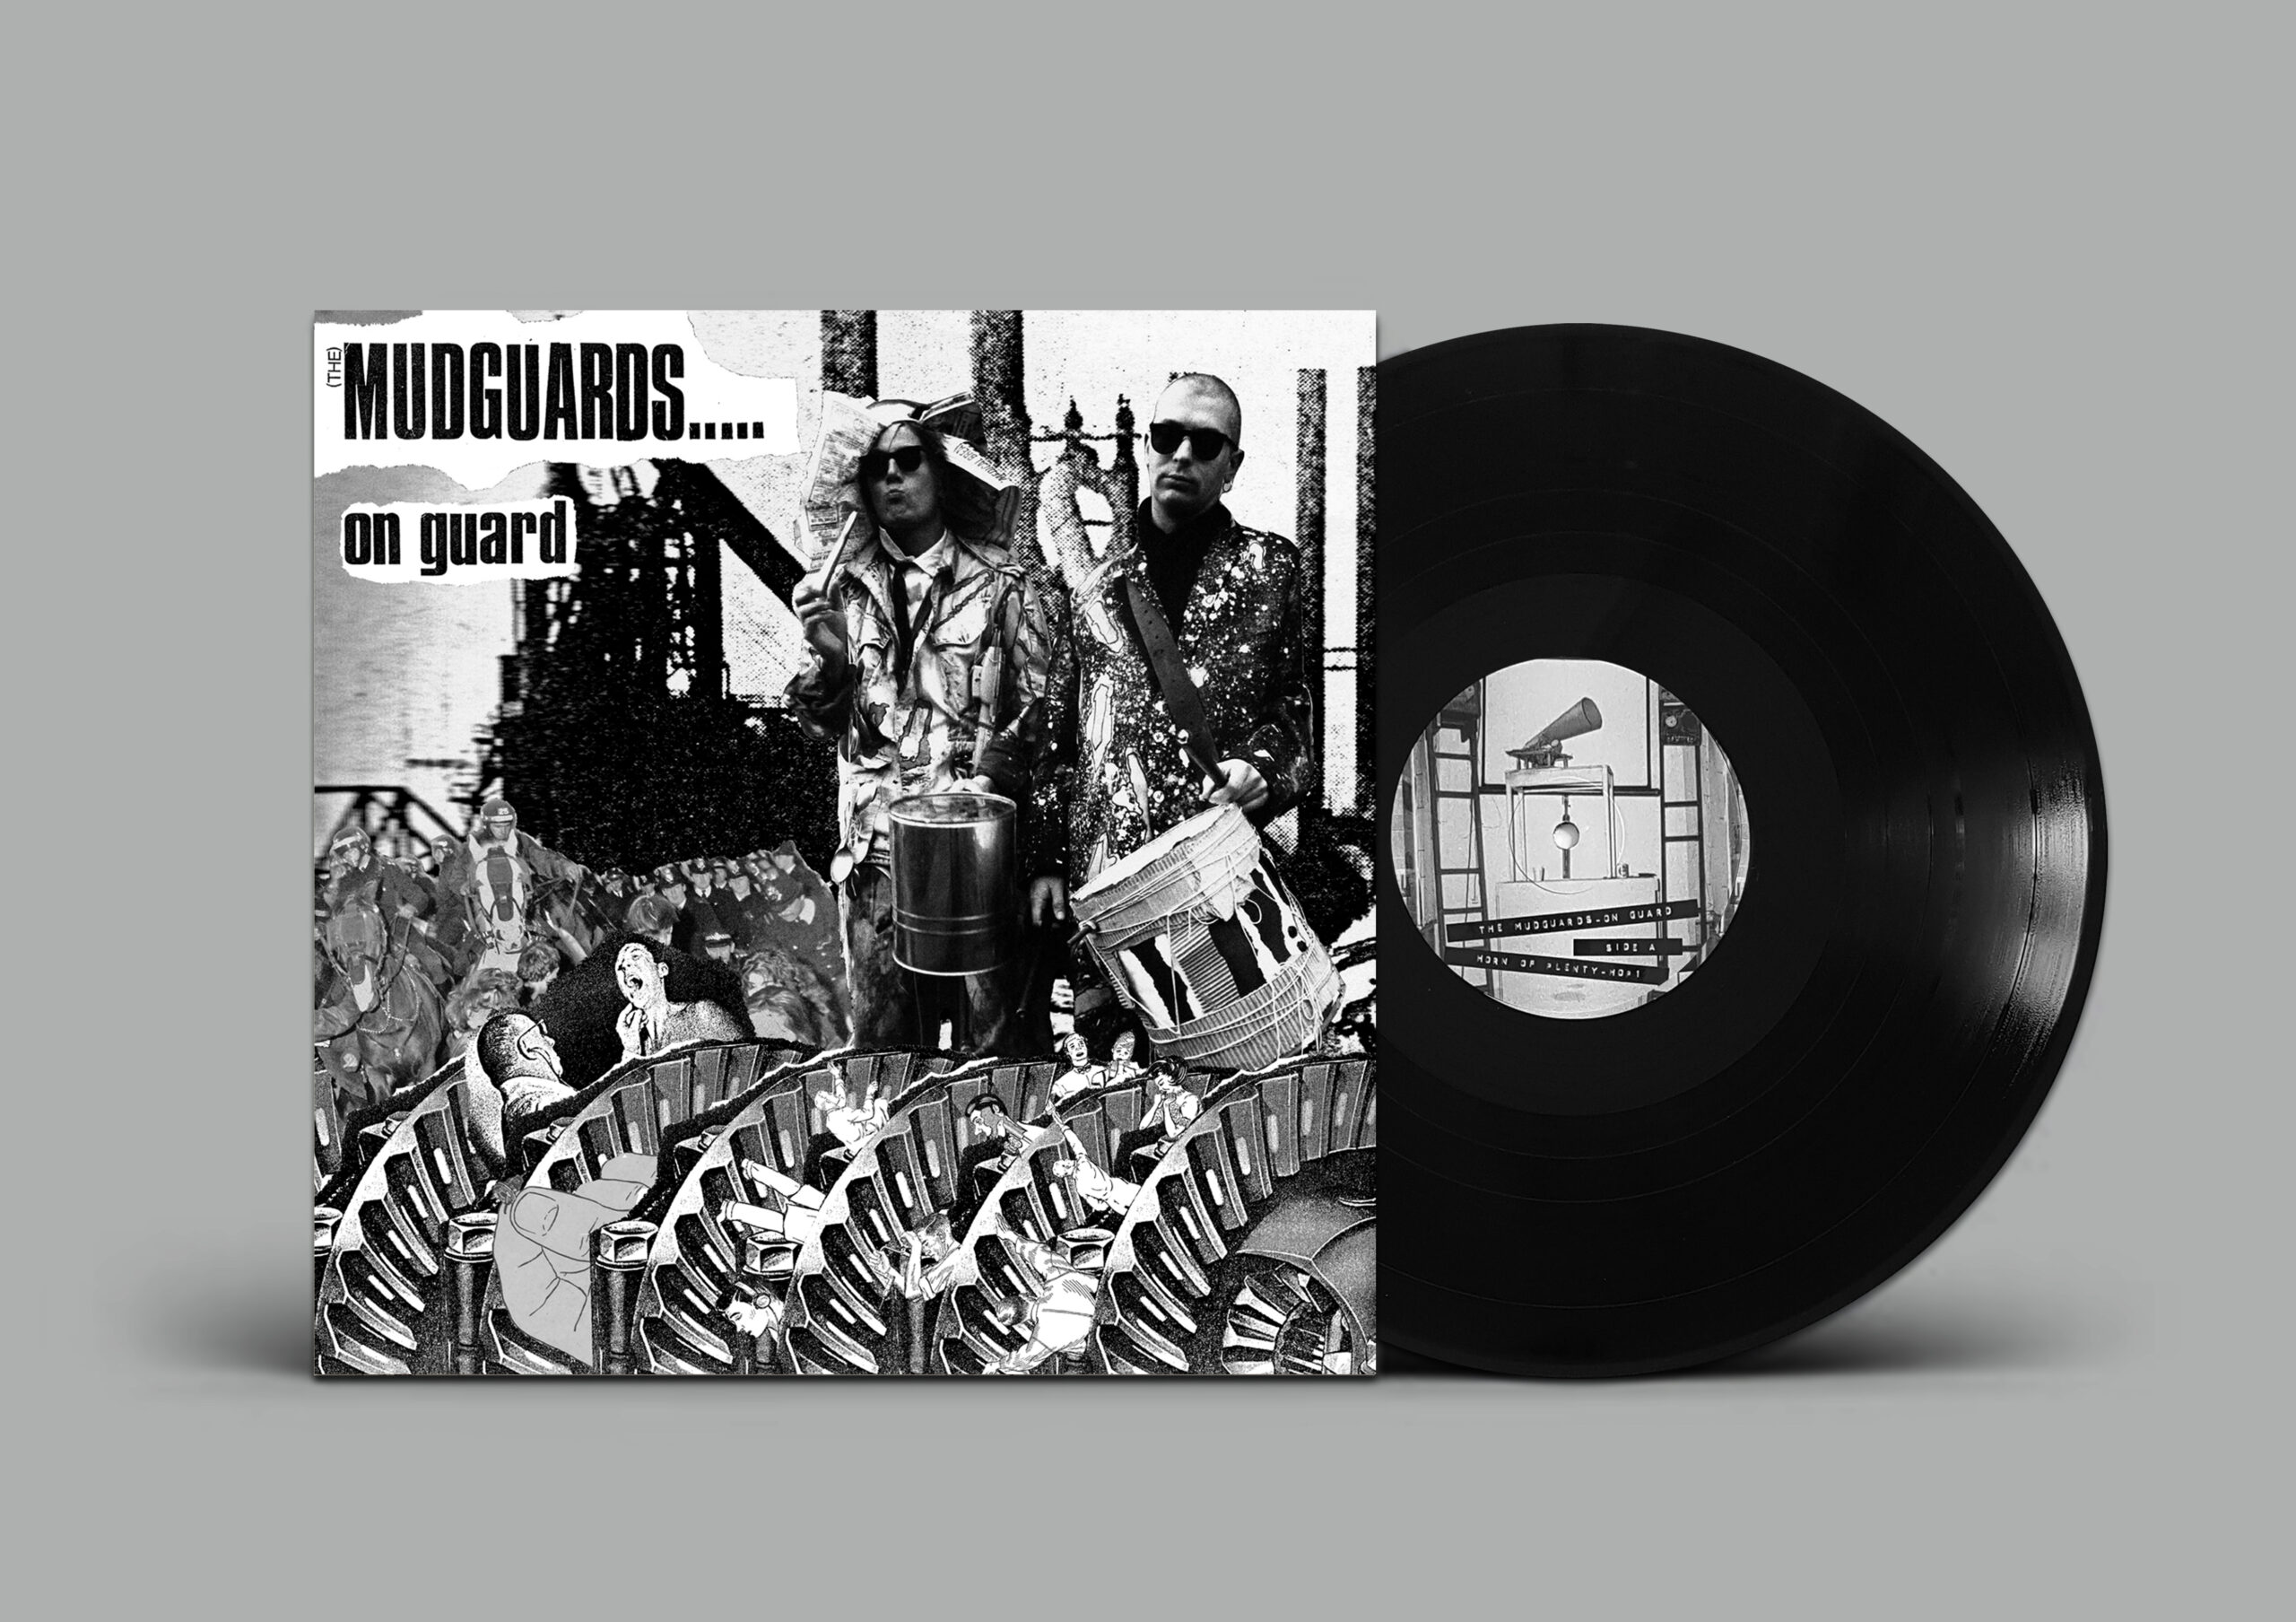 (The) Mudguards On Guard (Horn of Plenty, 2018) Record cover design by Karolina Kołodziej (Kolography).